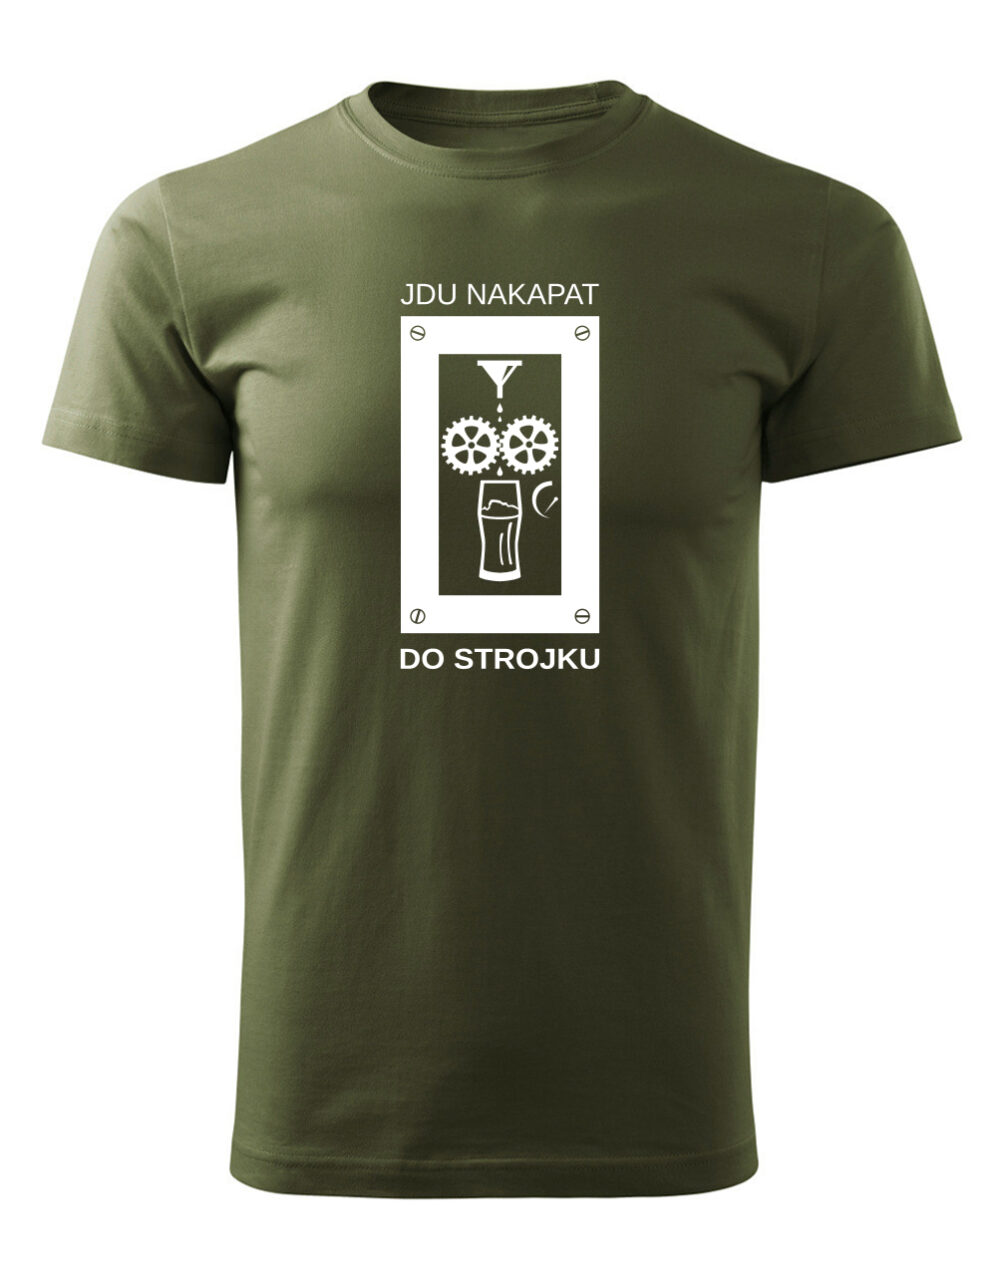 Pánské tričko s potiskem Jdu nakapat do strojku vojenská zelená